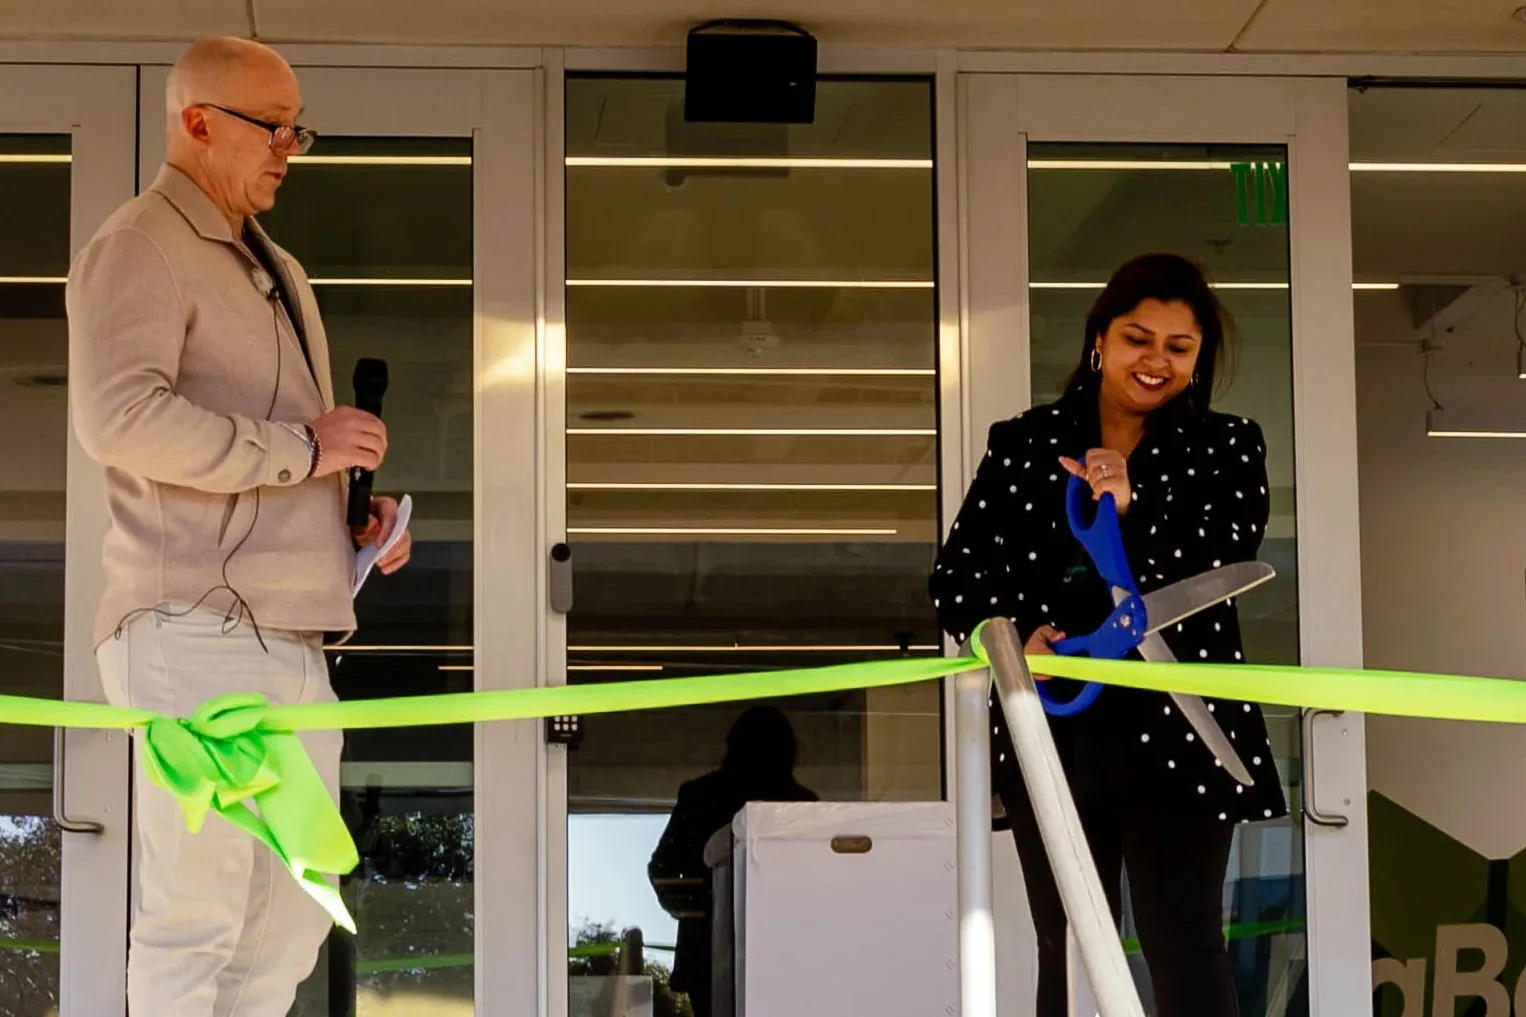 DaBella, empresa nacional de servicios de mejora del hogar, celebra la inauguración de su nueva sede con un corte de cinta